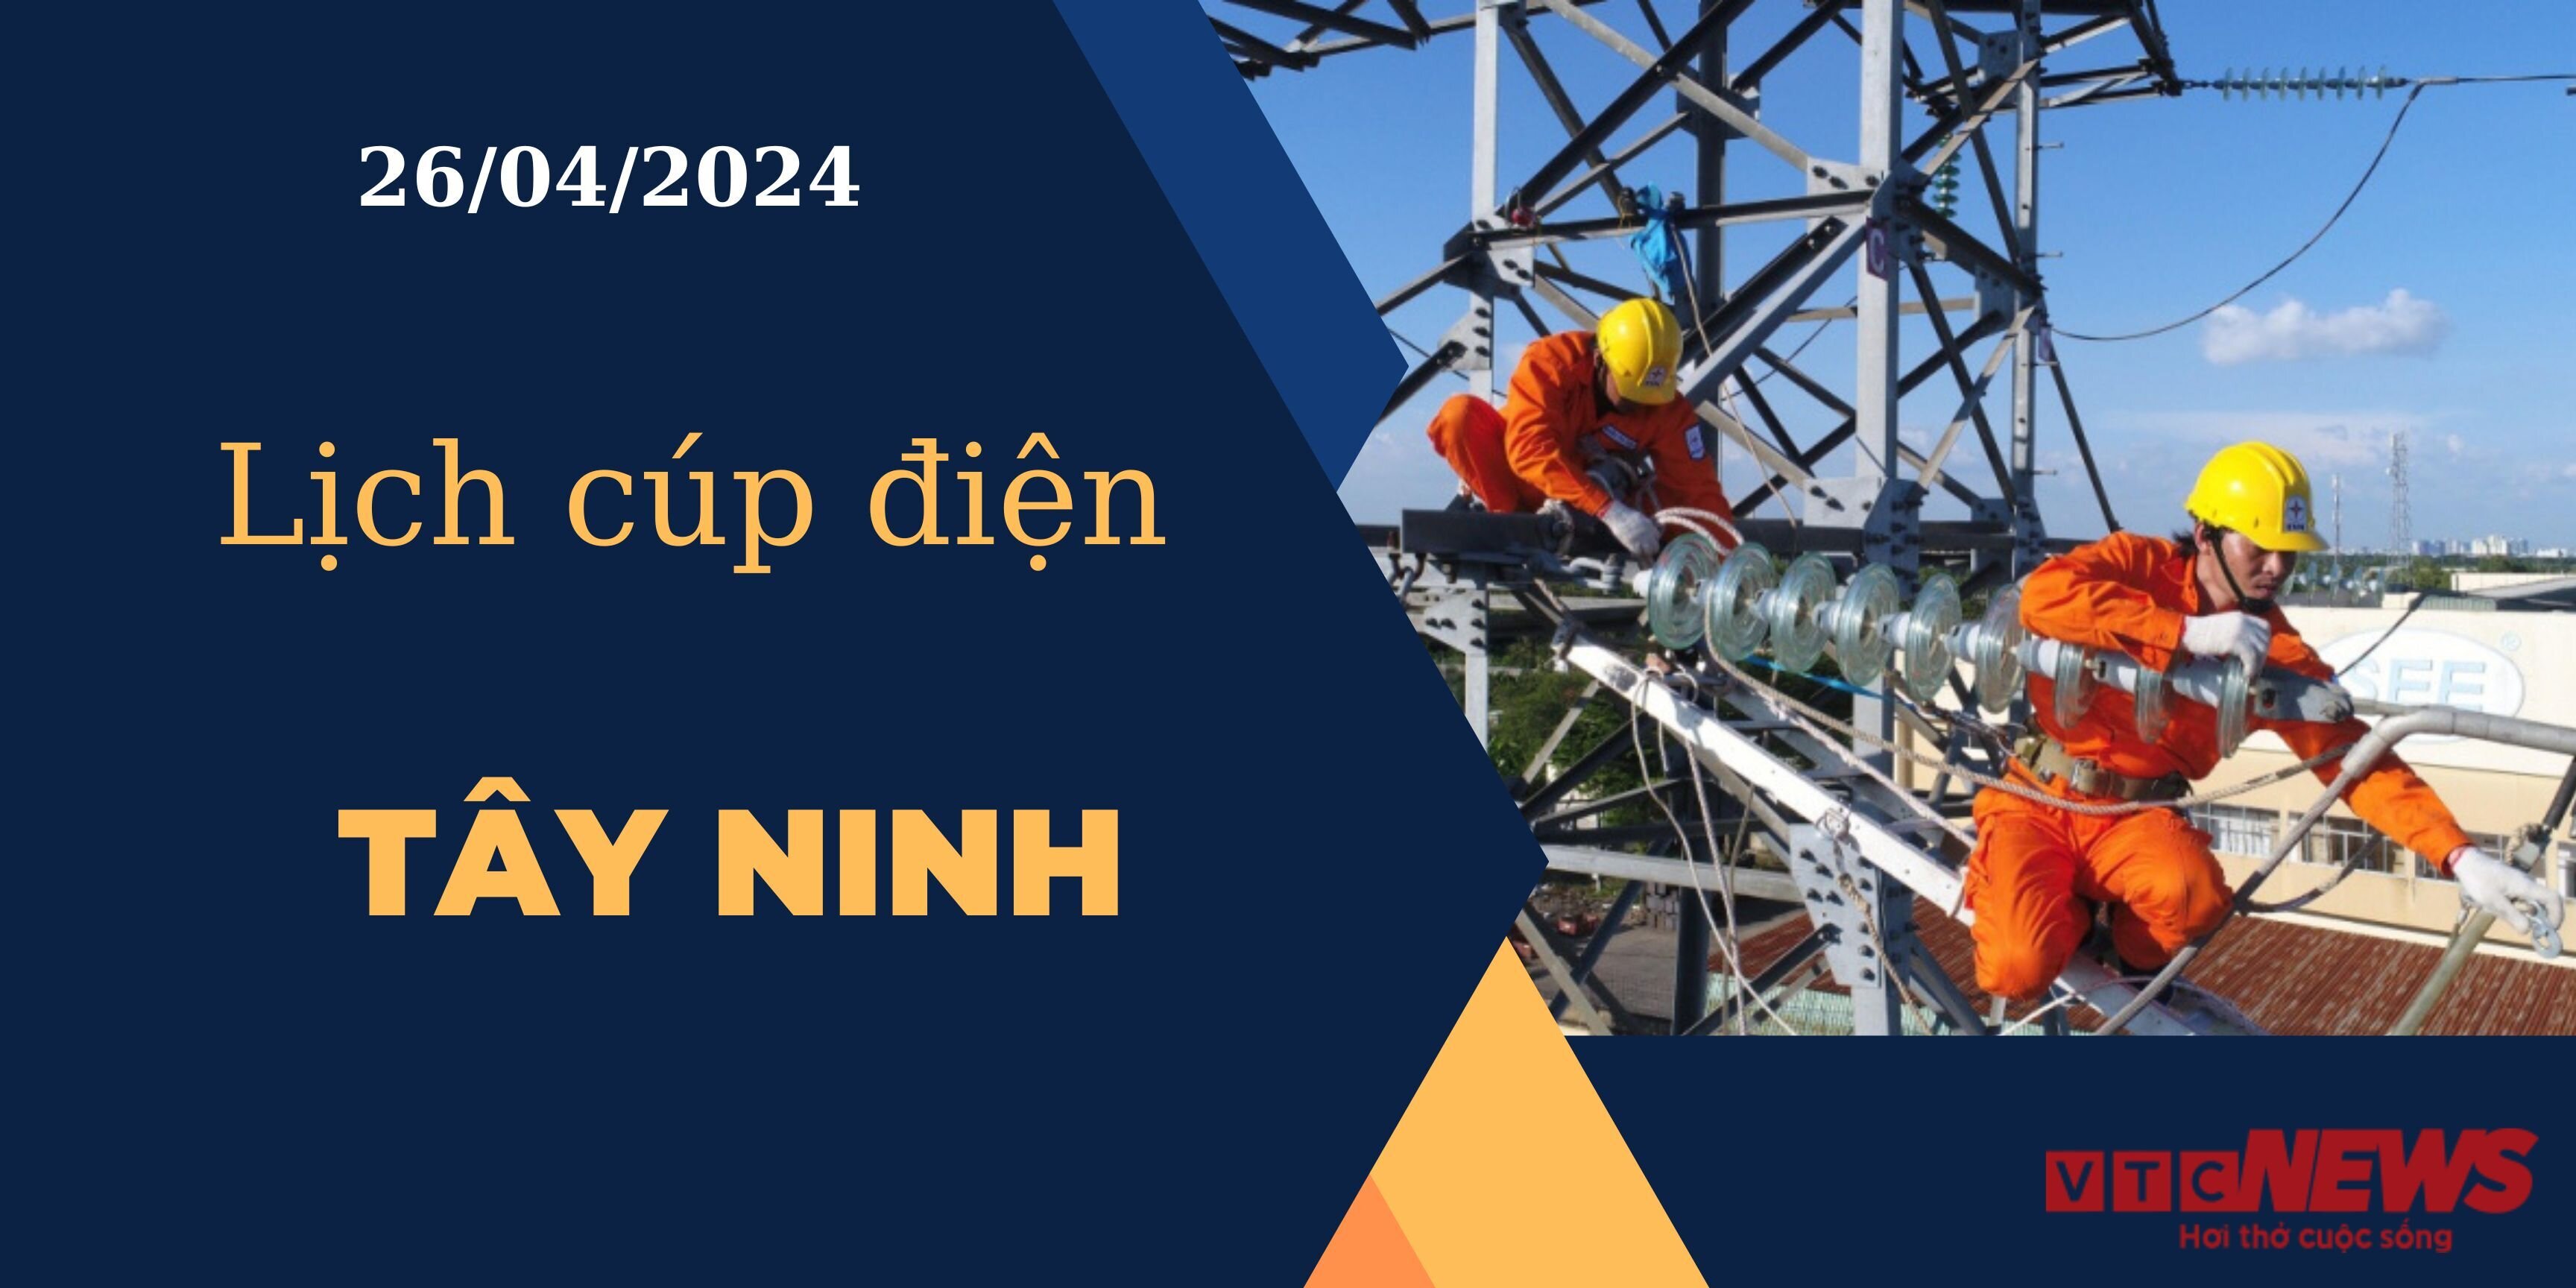 Lịch cúp điện hôm nay ngày 26/04/2024 tại Tây Ninh